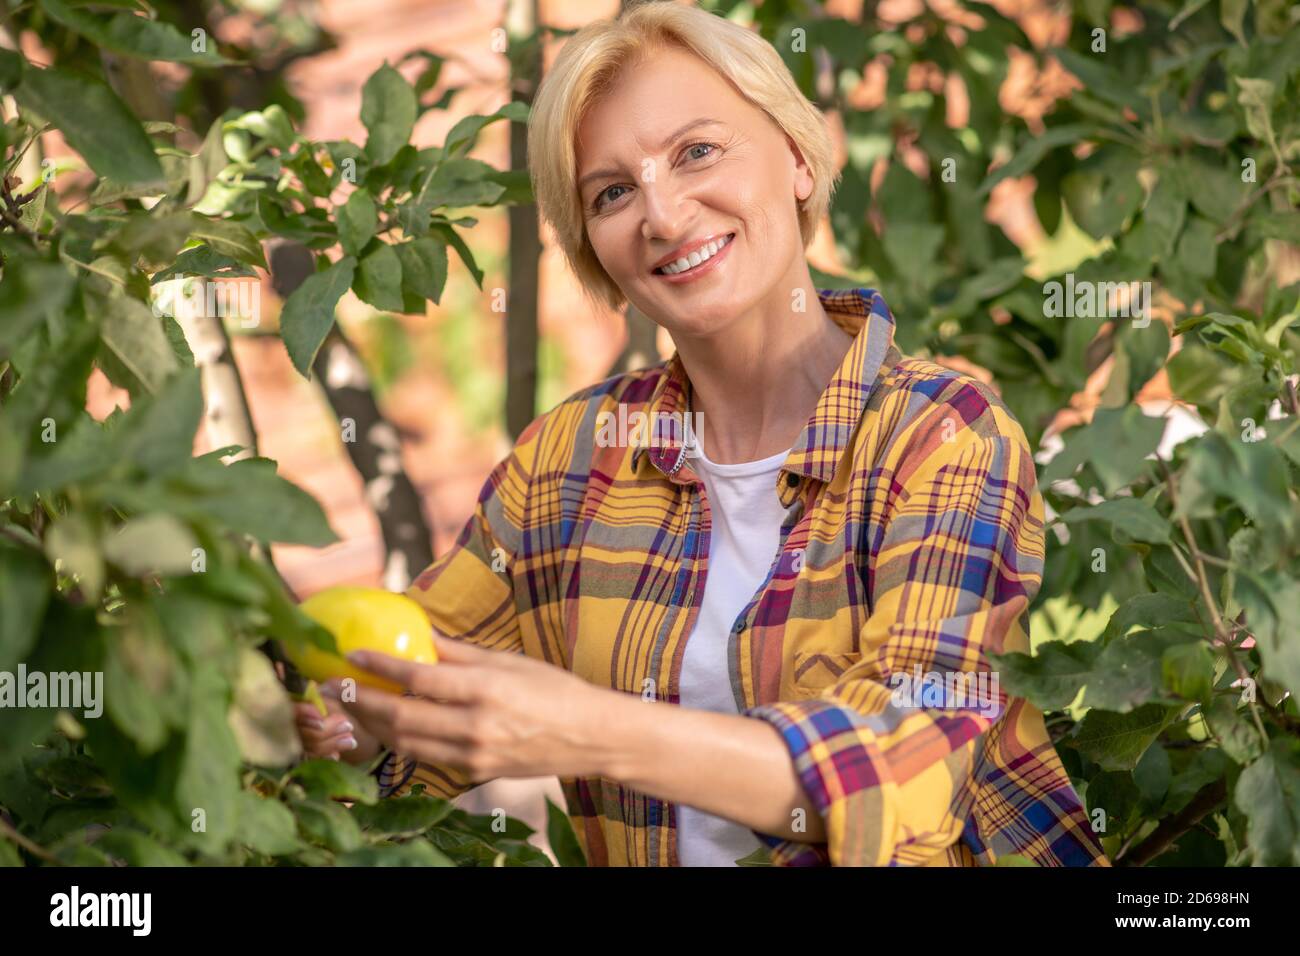 Lächelnd blonde weibliche schneiden Zitronen im Garten Stockfoto